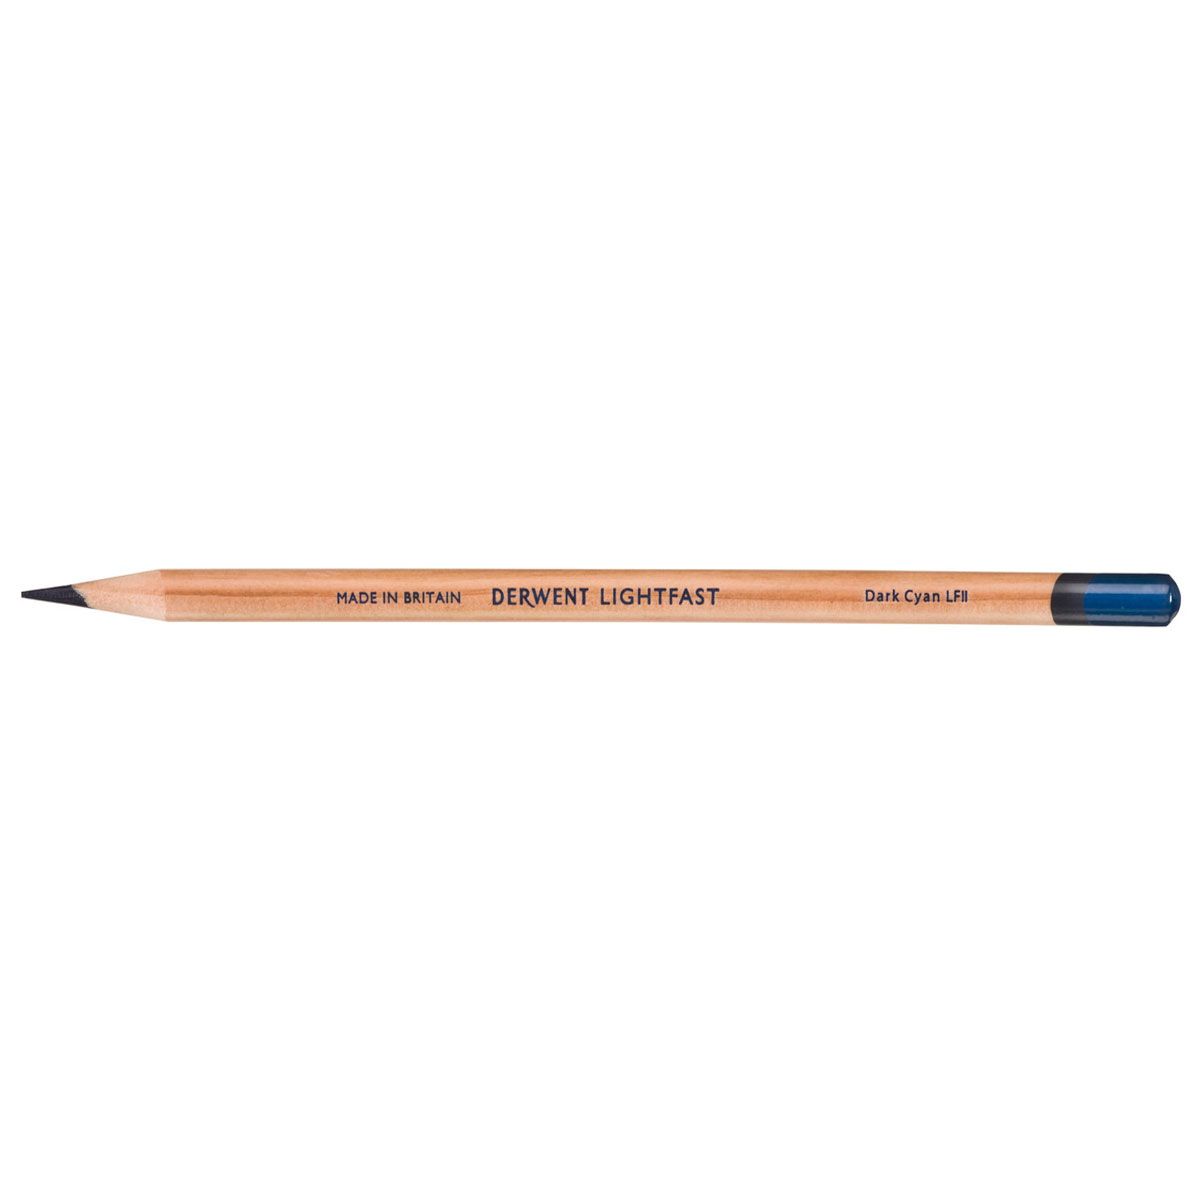 NEW Derwent Lightfast Pencil Colour: Dark Cyan